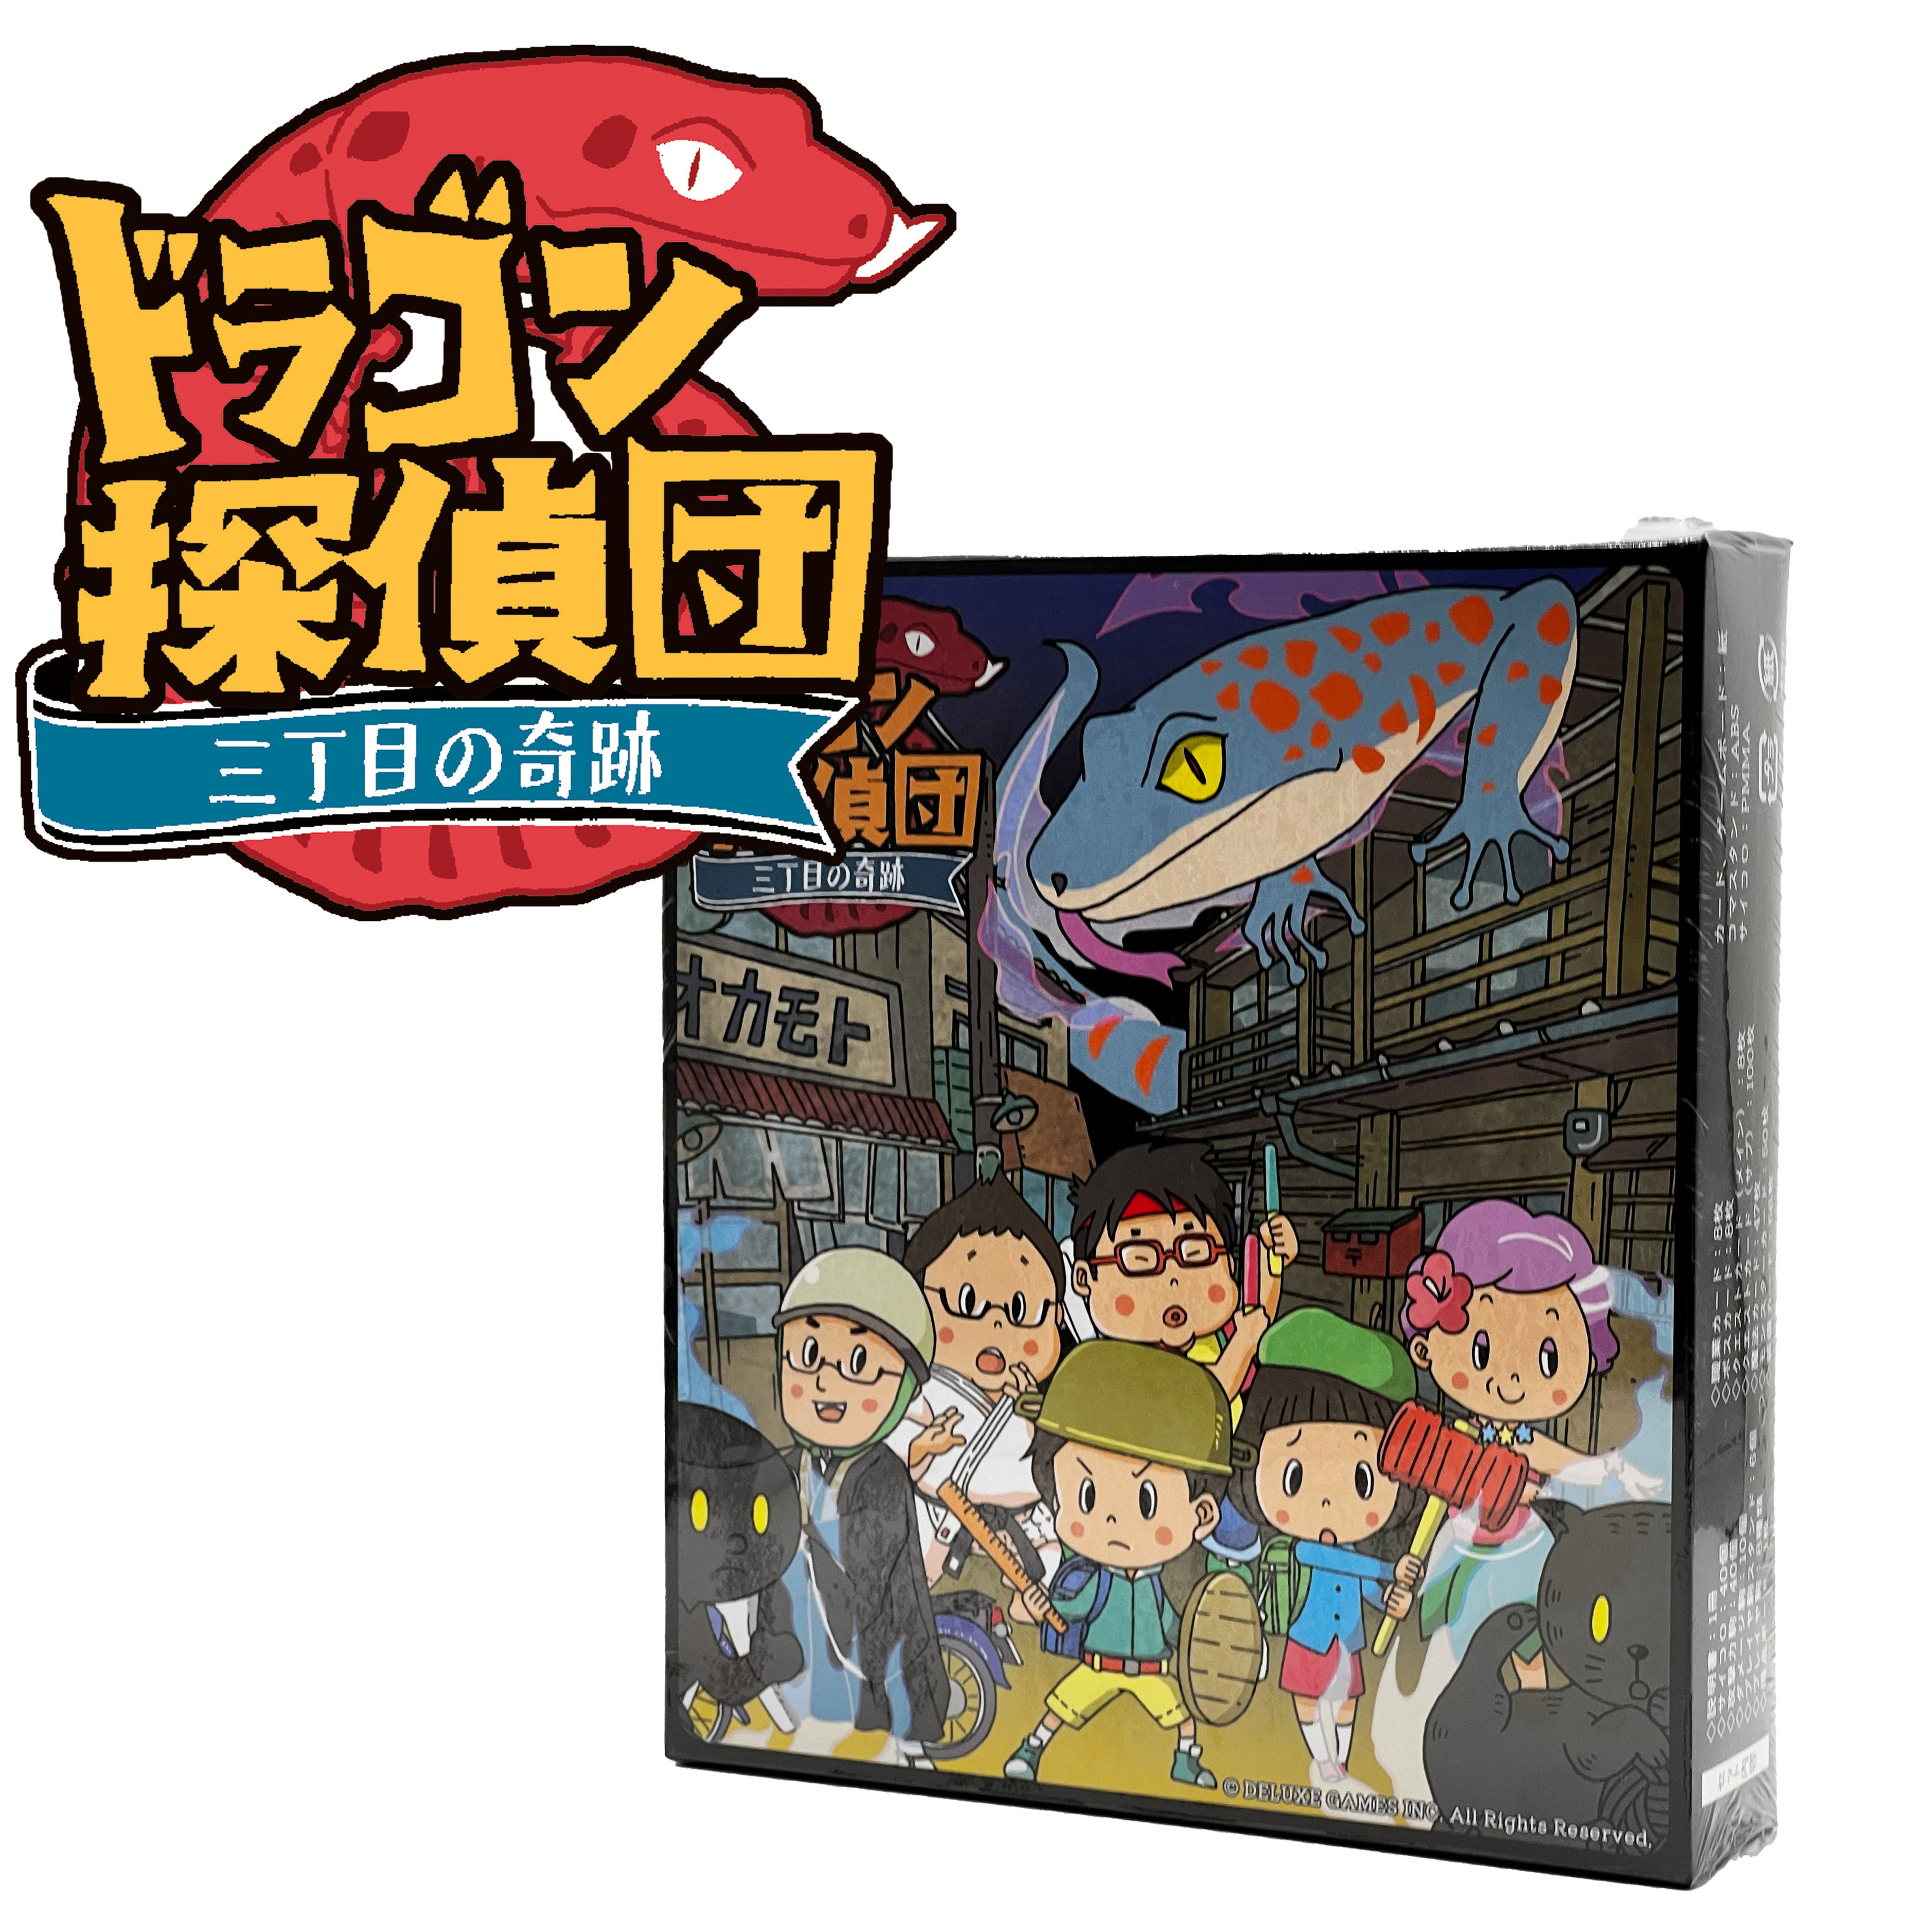 ボードゲーム『ドラゴン探偵団〜三丁目の奇跡〜』をECサイト「でらスト」で販売開始！